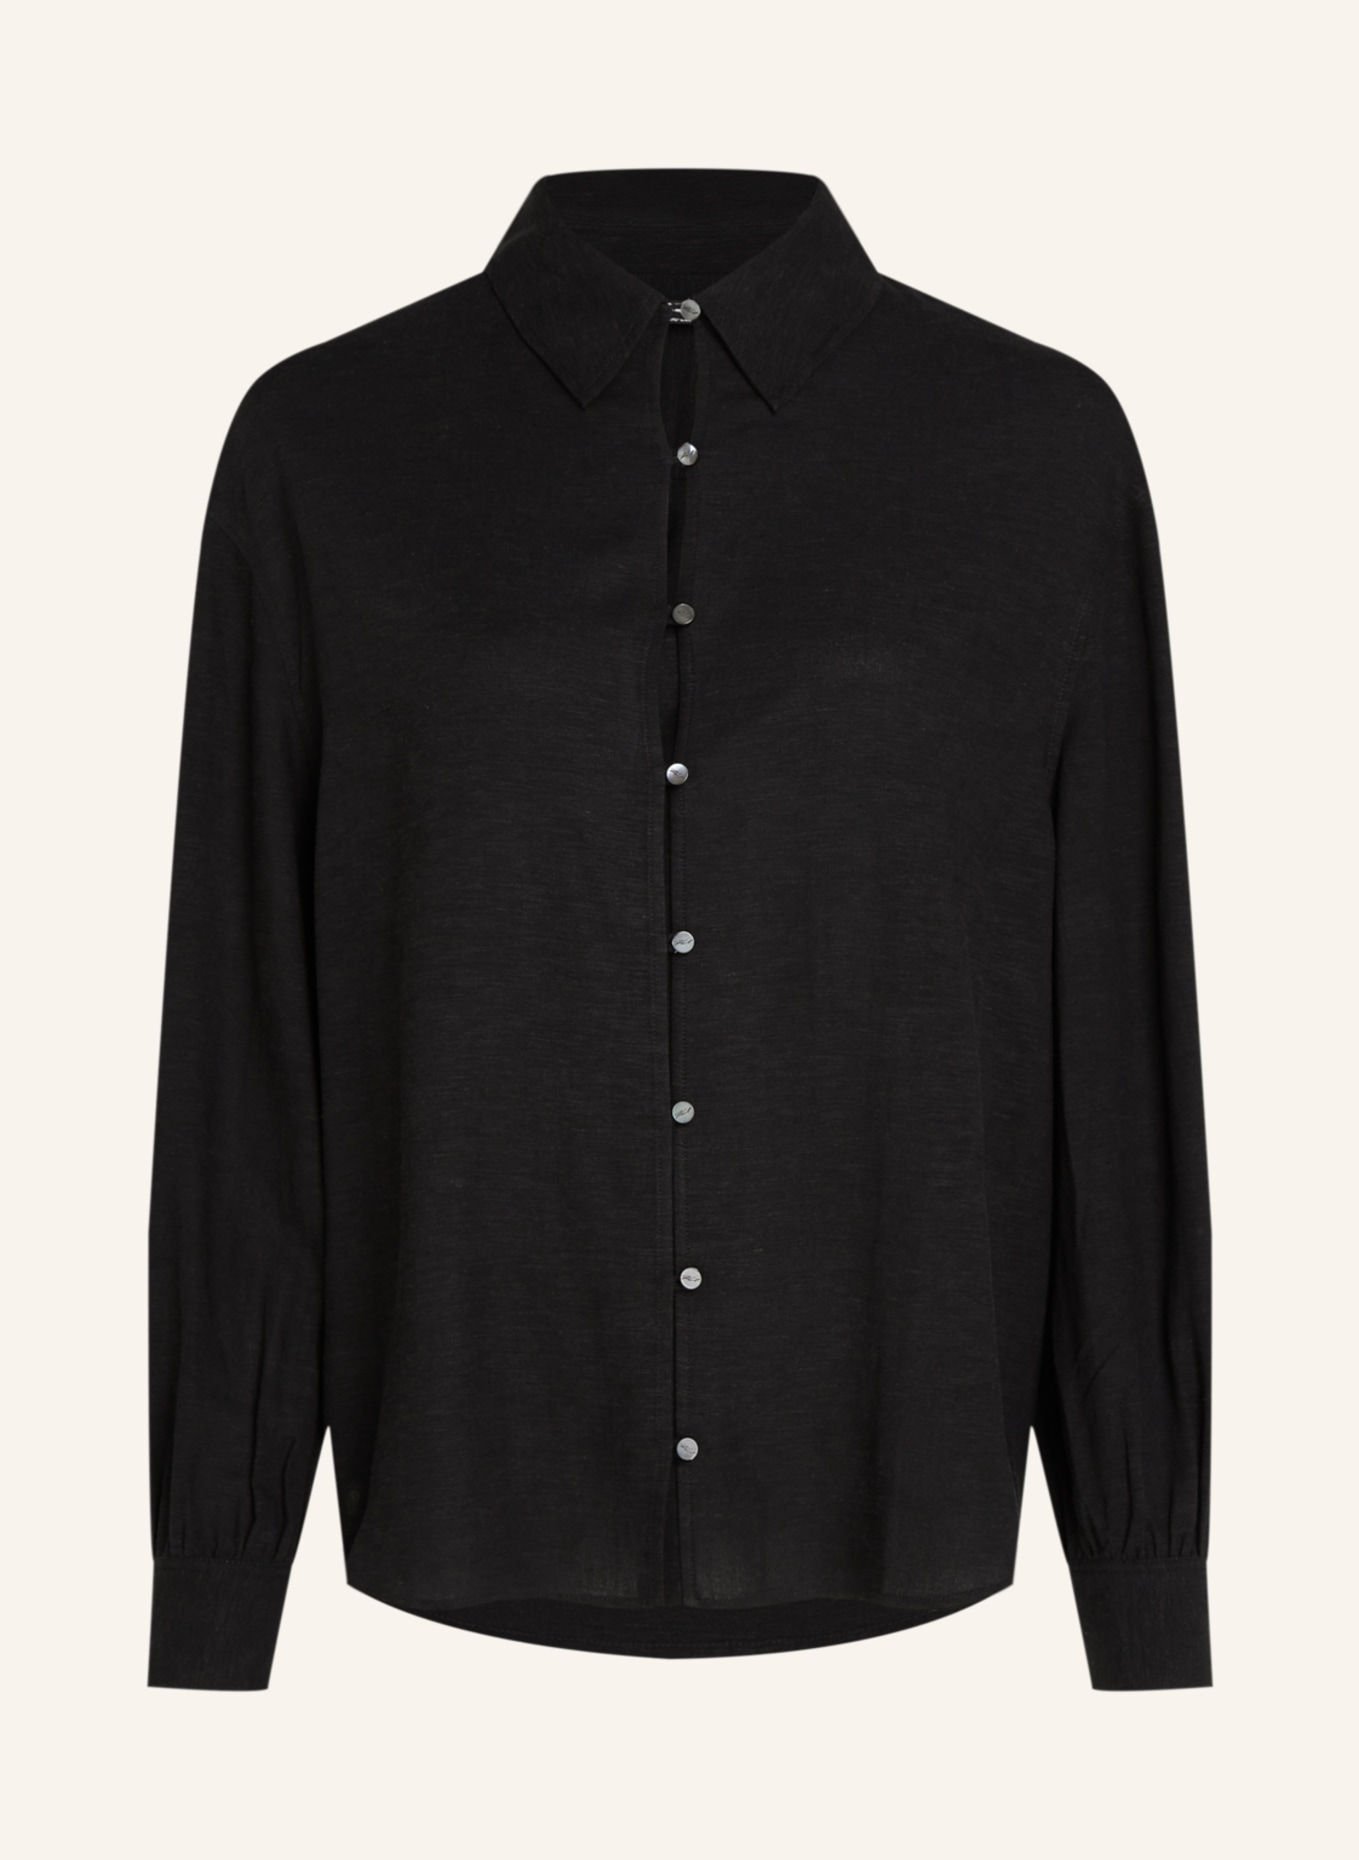 KARL LAGERFELD Bluse, Farbe: SCHWARZ (Bild 1)